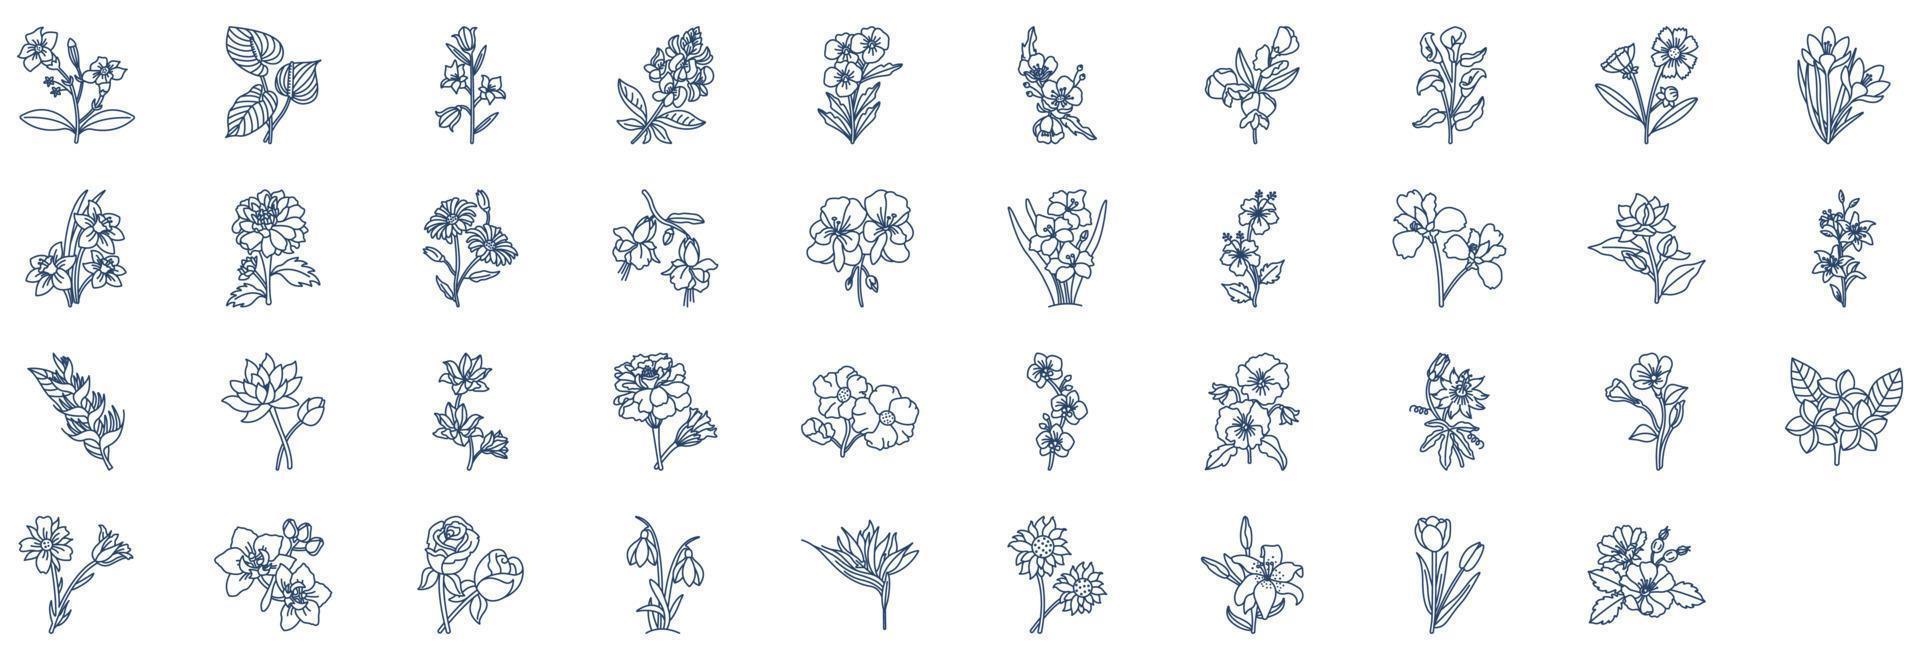 verzameling van pictogrammen verwant naar bloemen, inclusief pictogrammen Leuk vinden fuchsia, madeliefje, zonnebloem en meer. vector illustraties, pixel perfect reeks